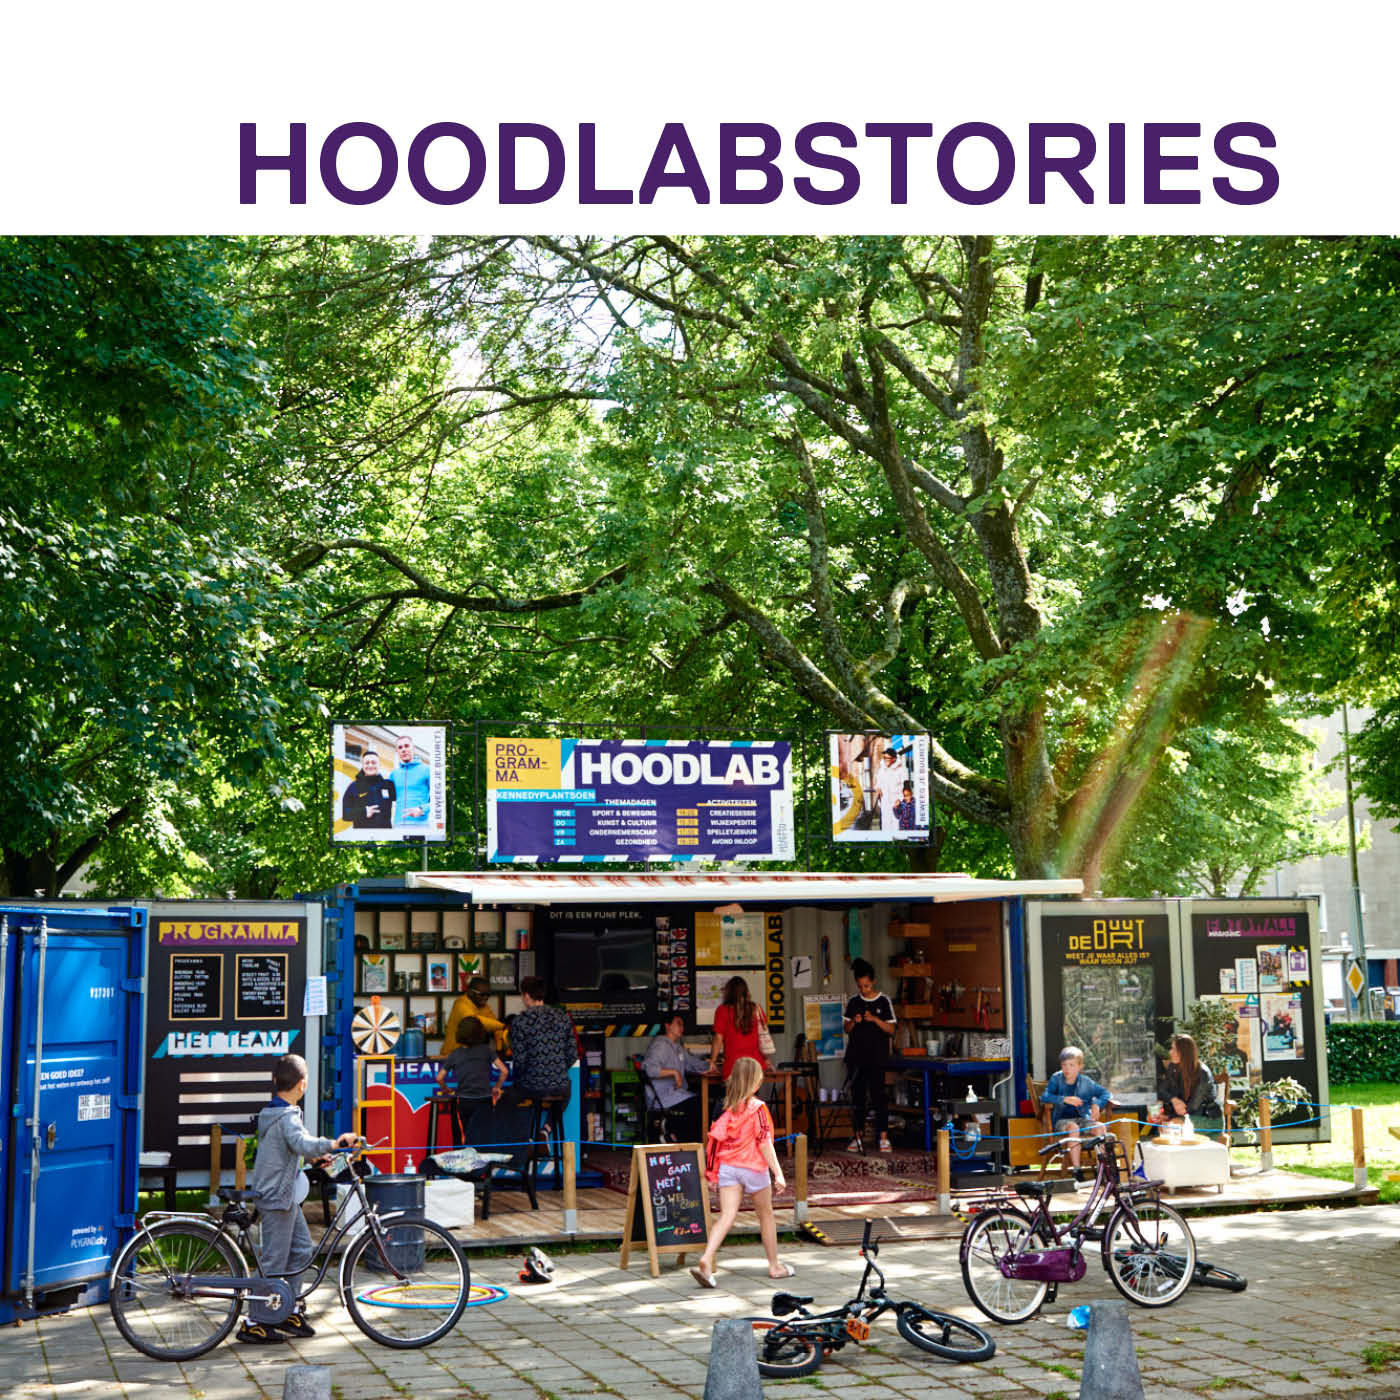 Hoodlabstories